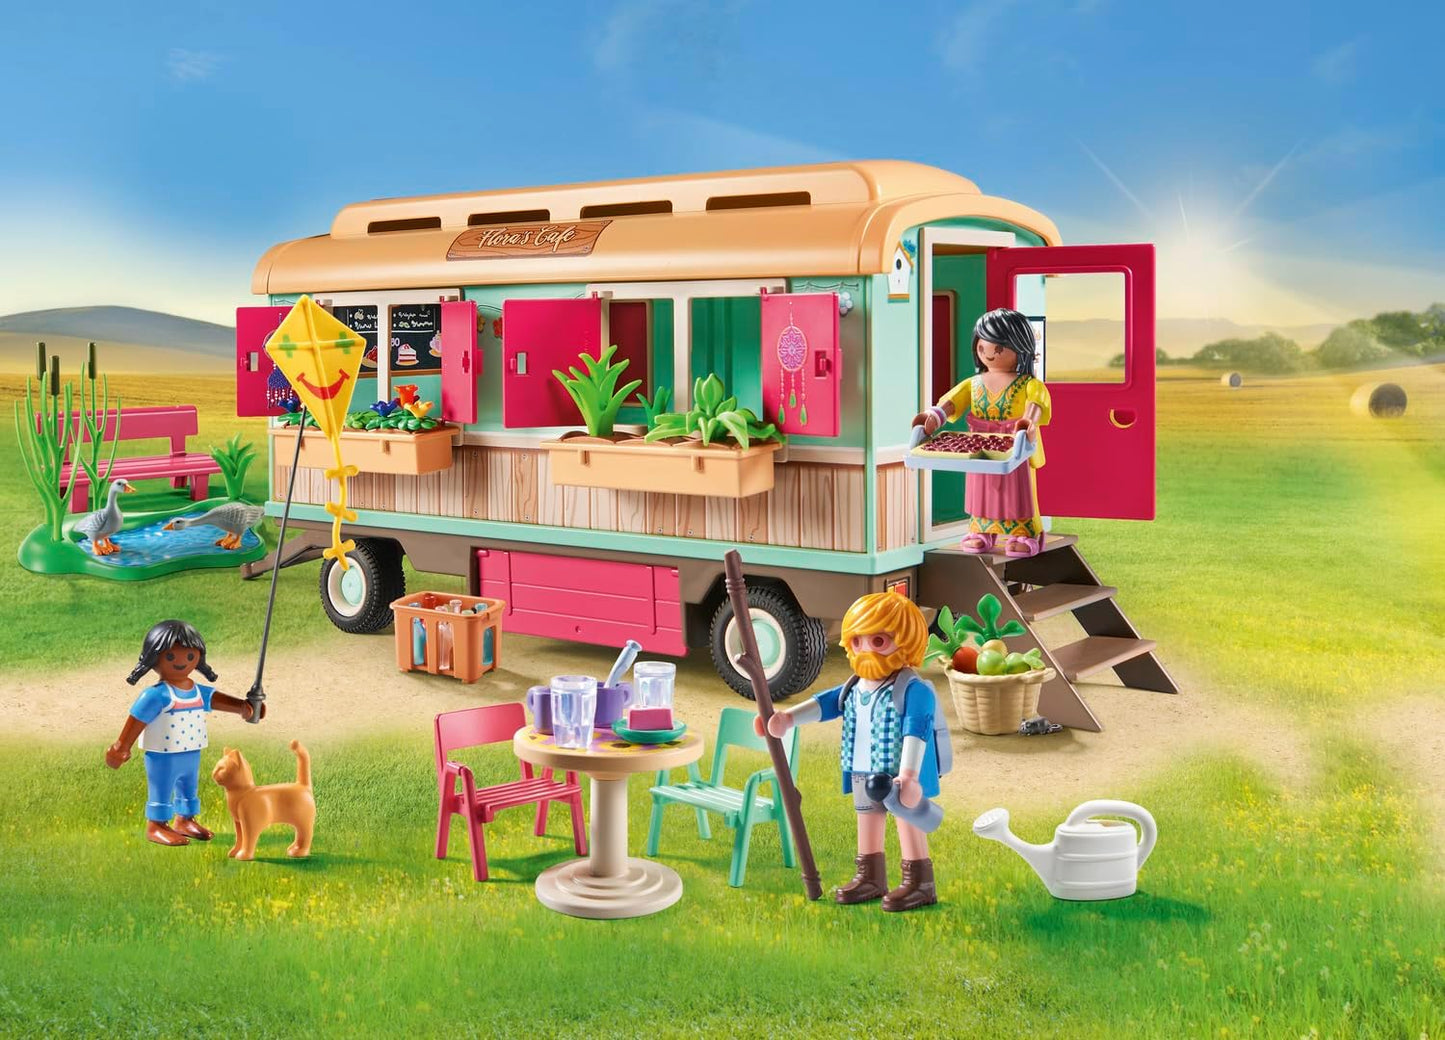 Playmobil  71441 País: Trem Café aconchegante com horta, com trailer cuidadosamente projetado, equipamento detalhado, encenação divertida e imaginativa, conjuntos de jogos sustentáveis adequados para crianças de 4 anos ou mais